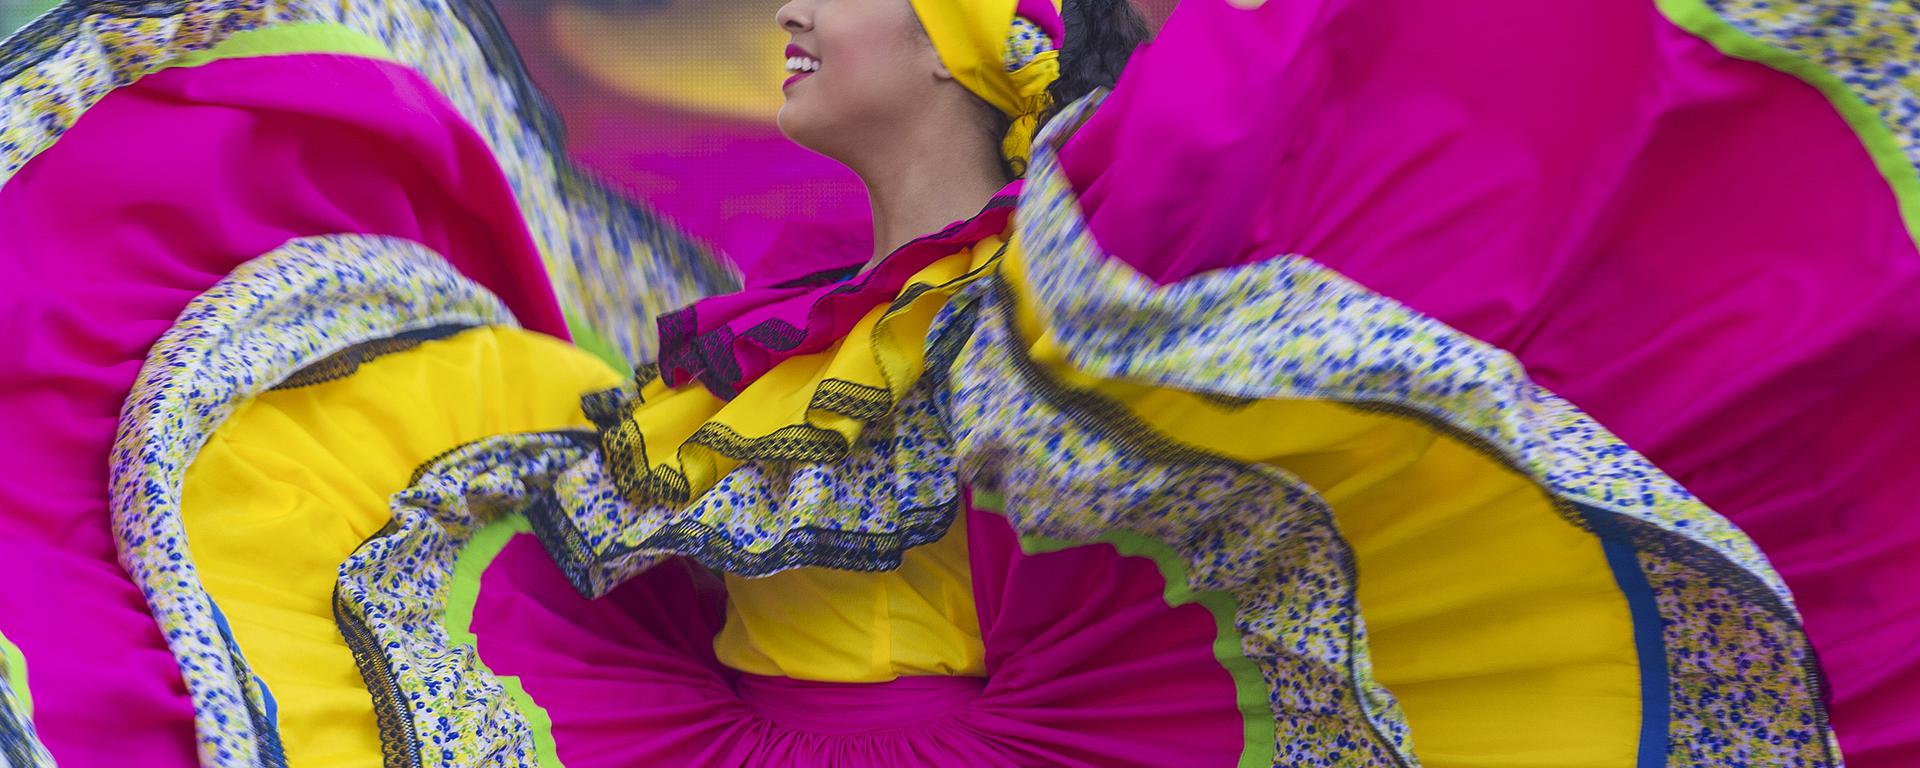 En Barranquilla se baila así: un recorrido lleno de sabor por la ciudad colombiana donde nació Shakira